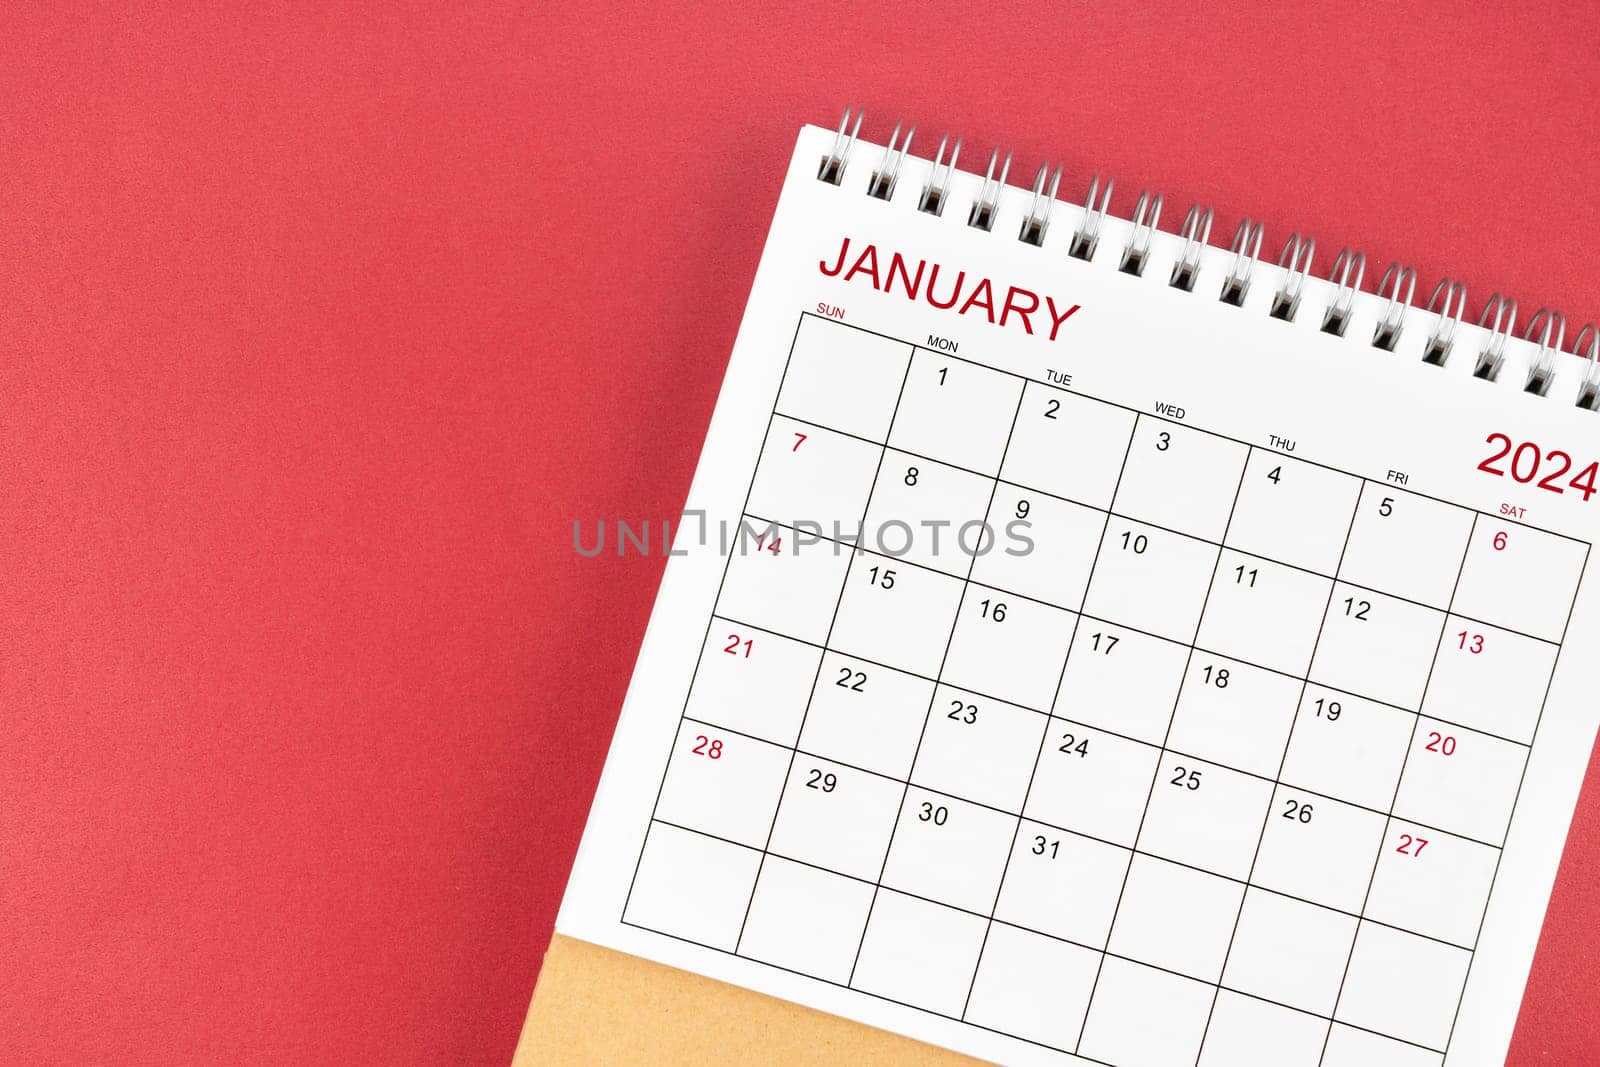 January 2024 desk calendar on red color background.